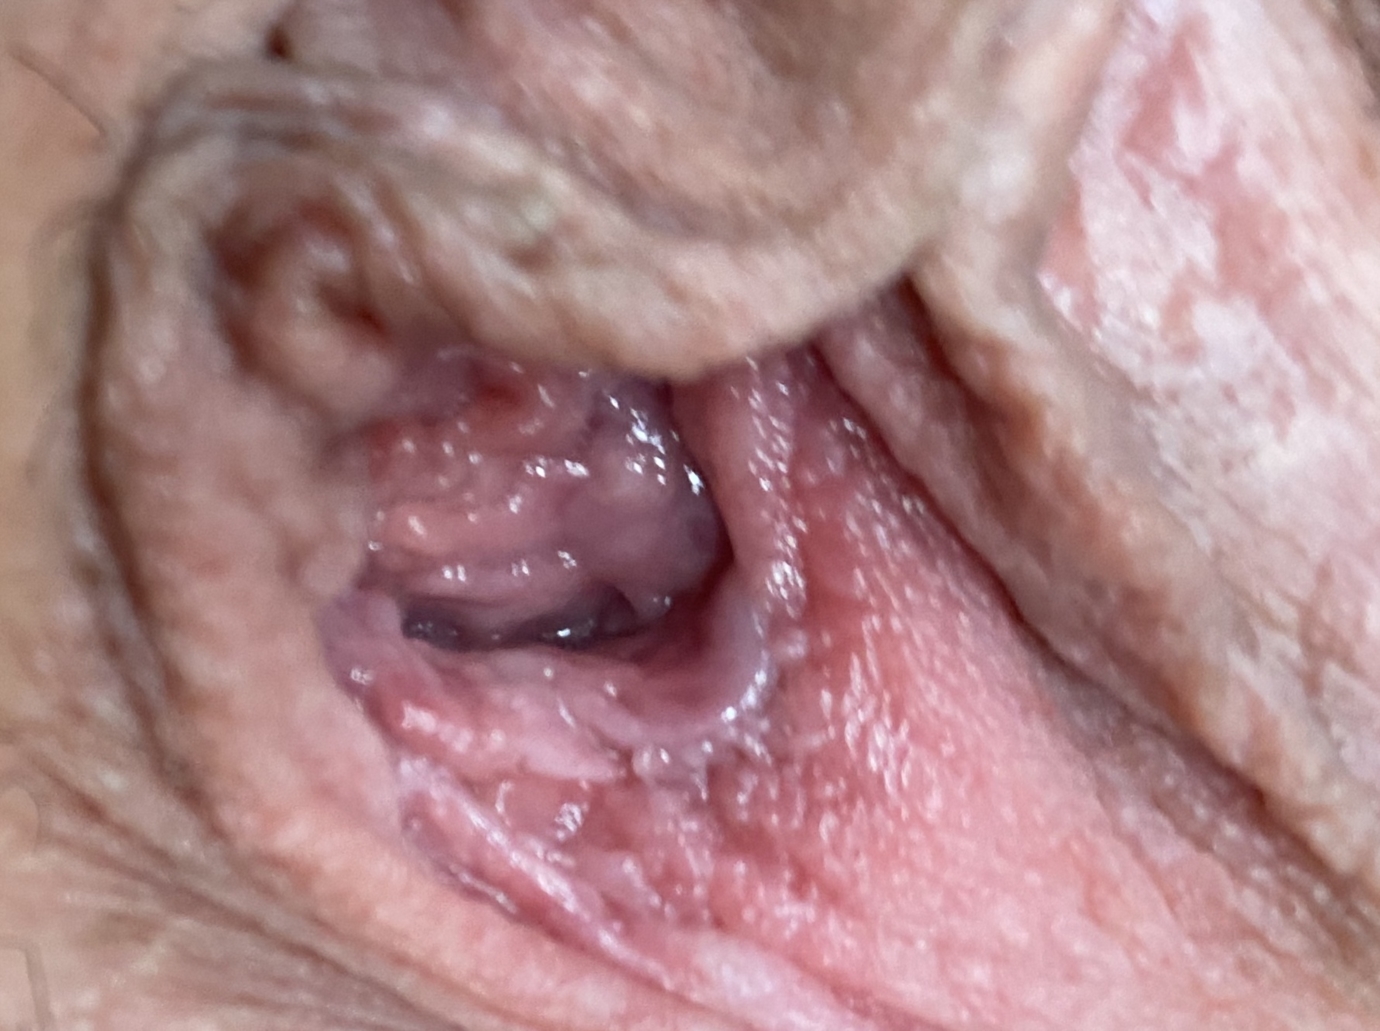 Vestibular papillomatosis dangerous. Why is the papillomavirus dangerous